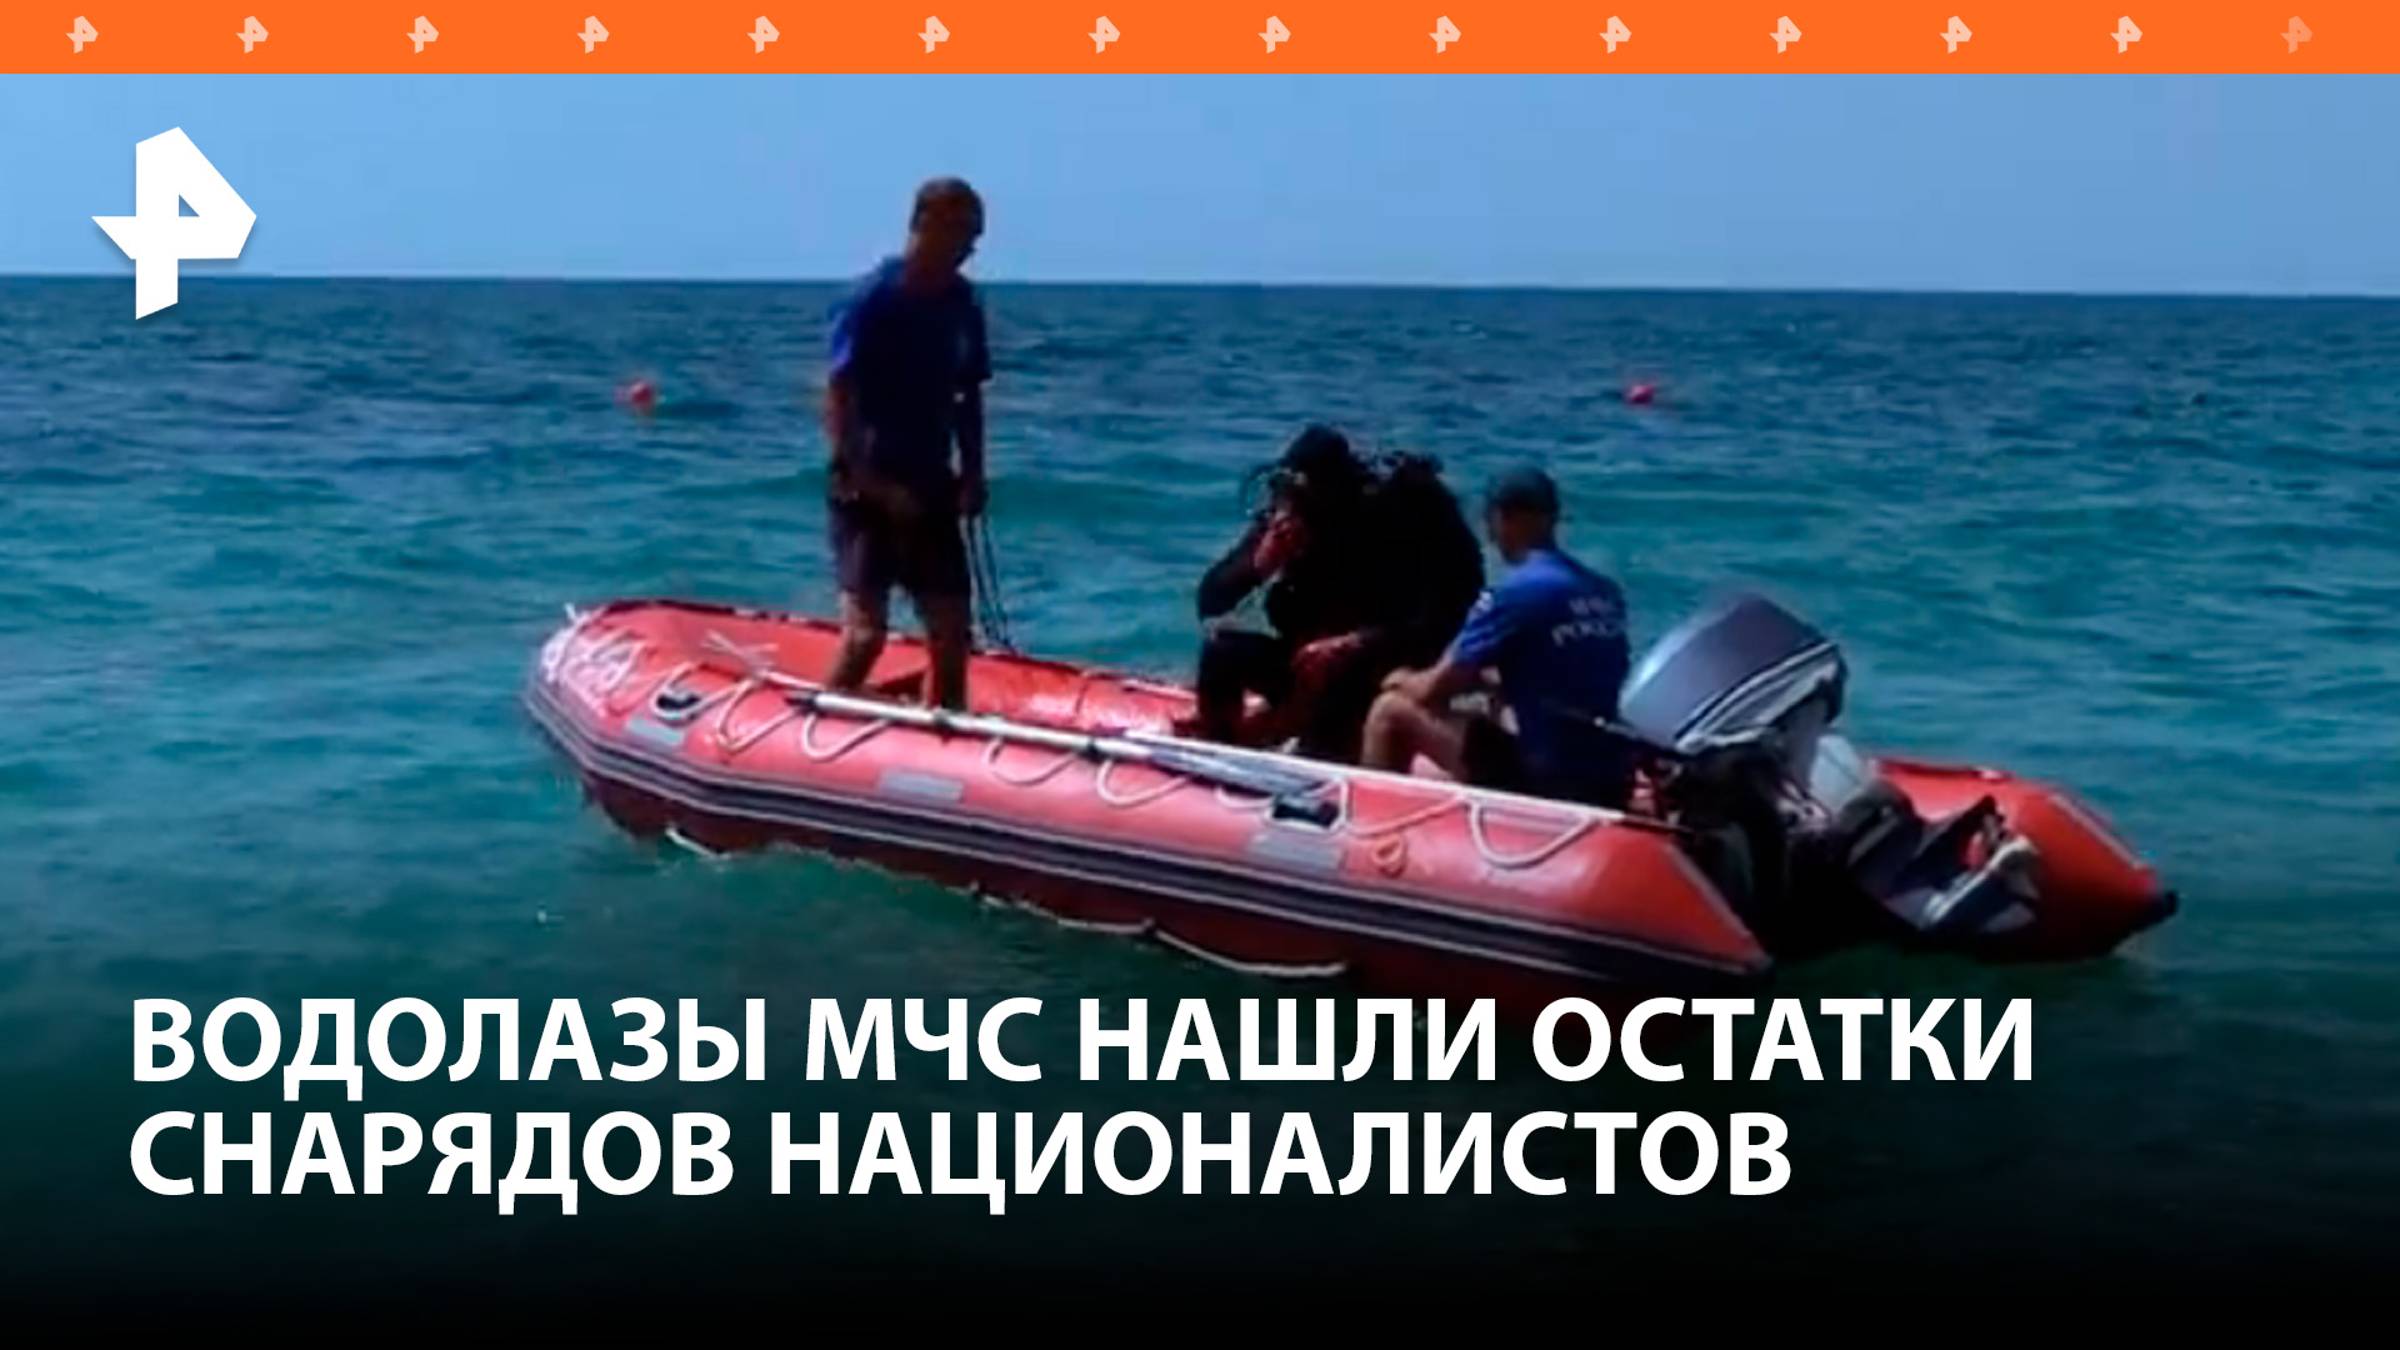 Водолазы обнаружили неразорвавшийся боеприпас в севастопольской акватории после ракетного удара ВСУ